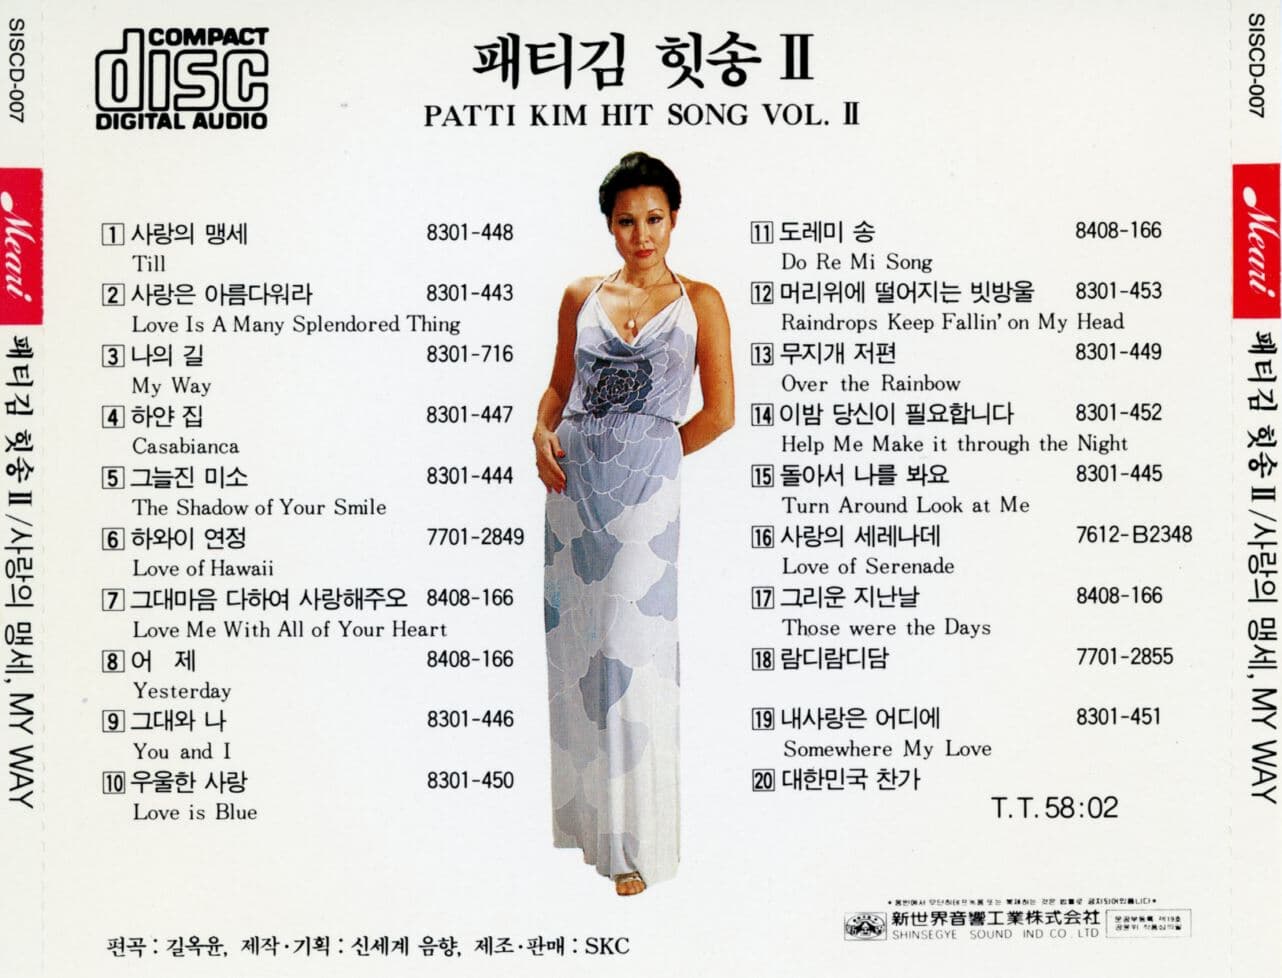 패티 김 - 힛송2 Patti Kim Hit Song Vol.2